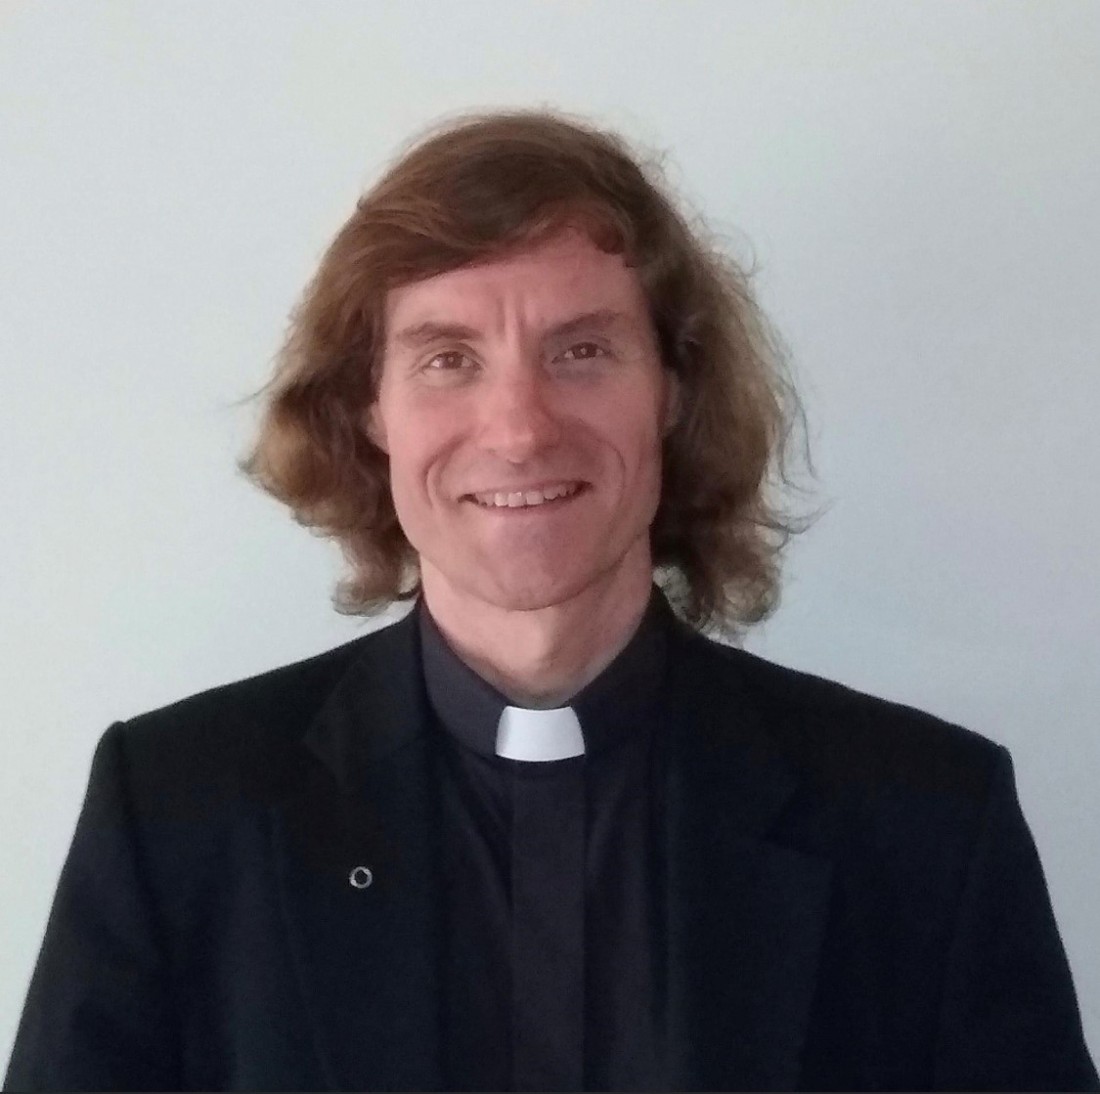 Priest’s hair cut raises thousands for church